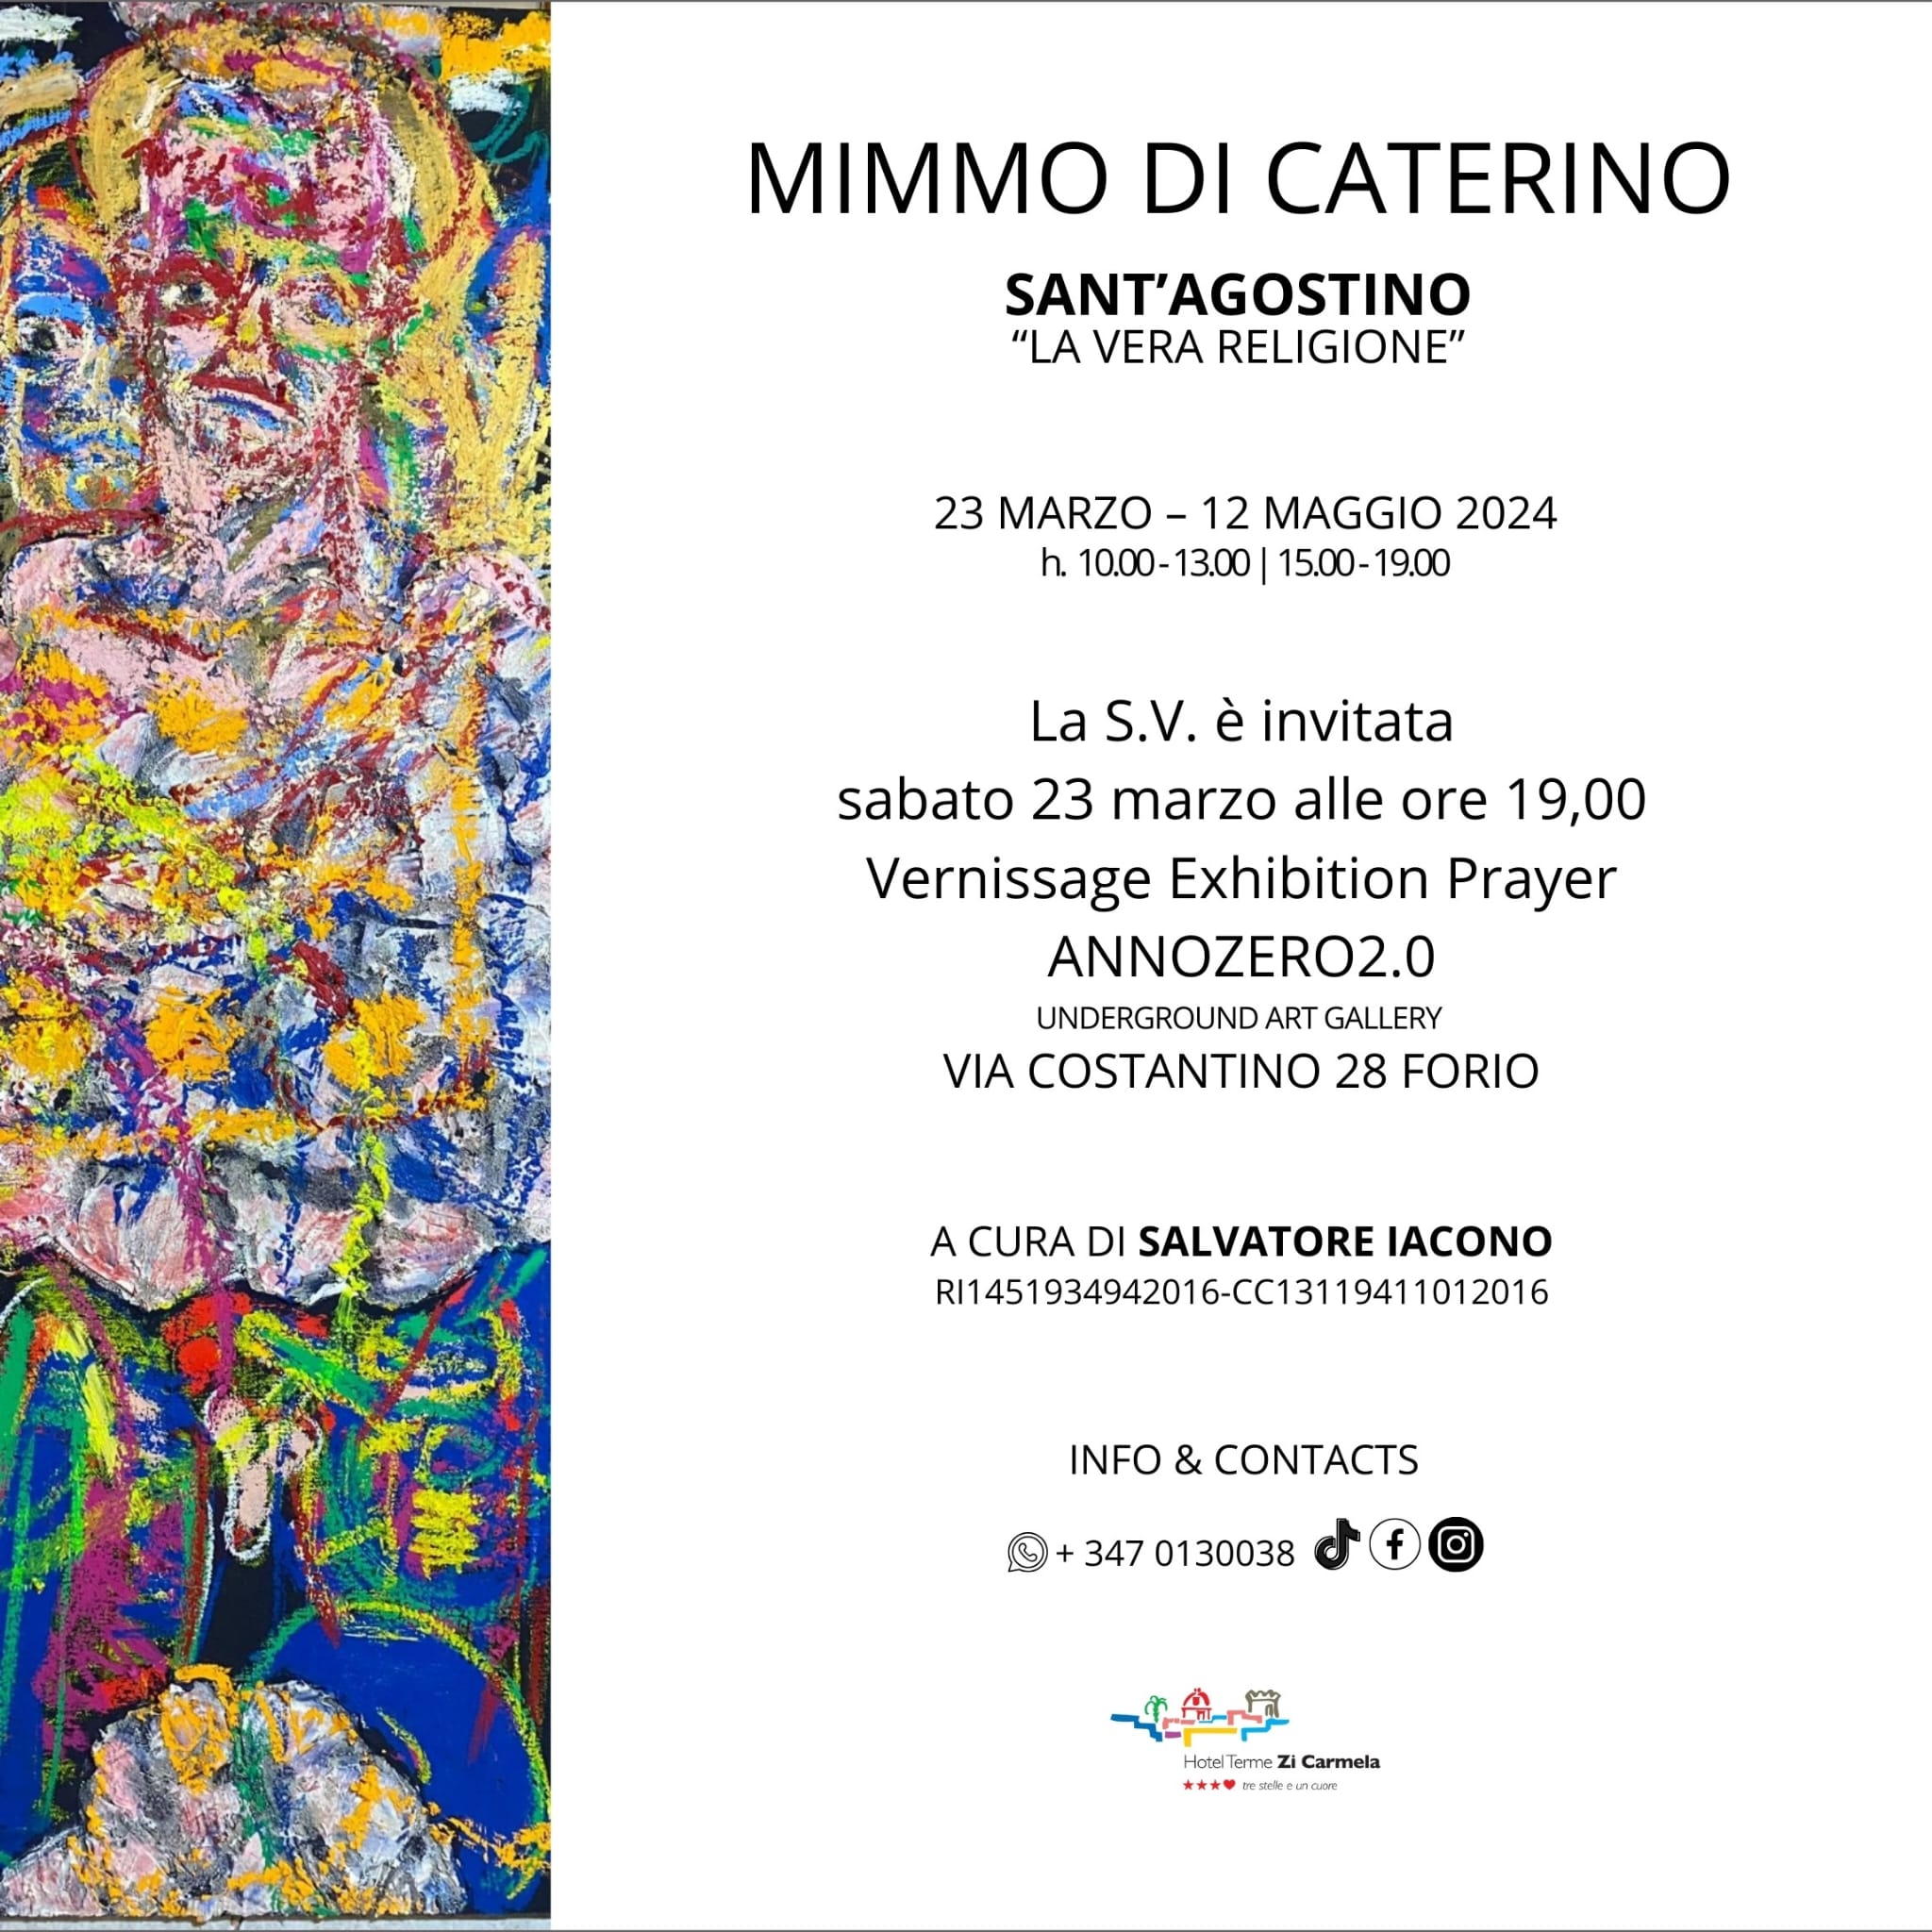 Mimmo Di Caterino: Vernissage Exhibition Prayer